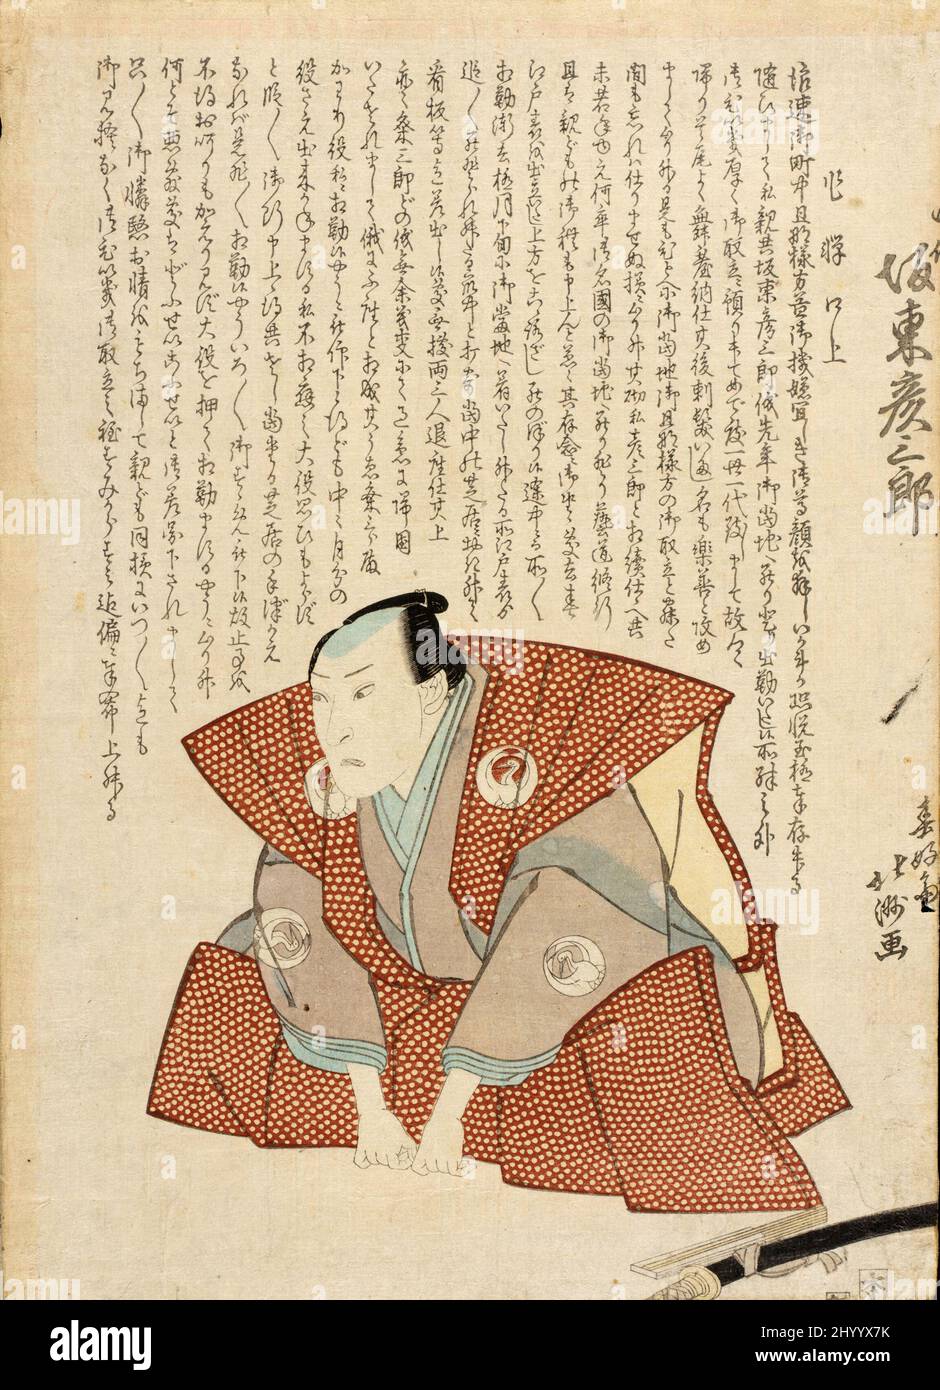 Retrato conmemorativo del Actor Bandō Hikosaburō III Shunkōsai Hokushū (Japón, activo 1808-1832). Japón, alrededor de 1828. Impresiones; bloques de madera. Estampado de bloques de madera en color Foto de stock